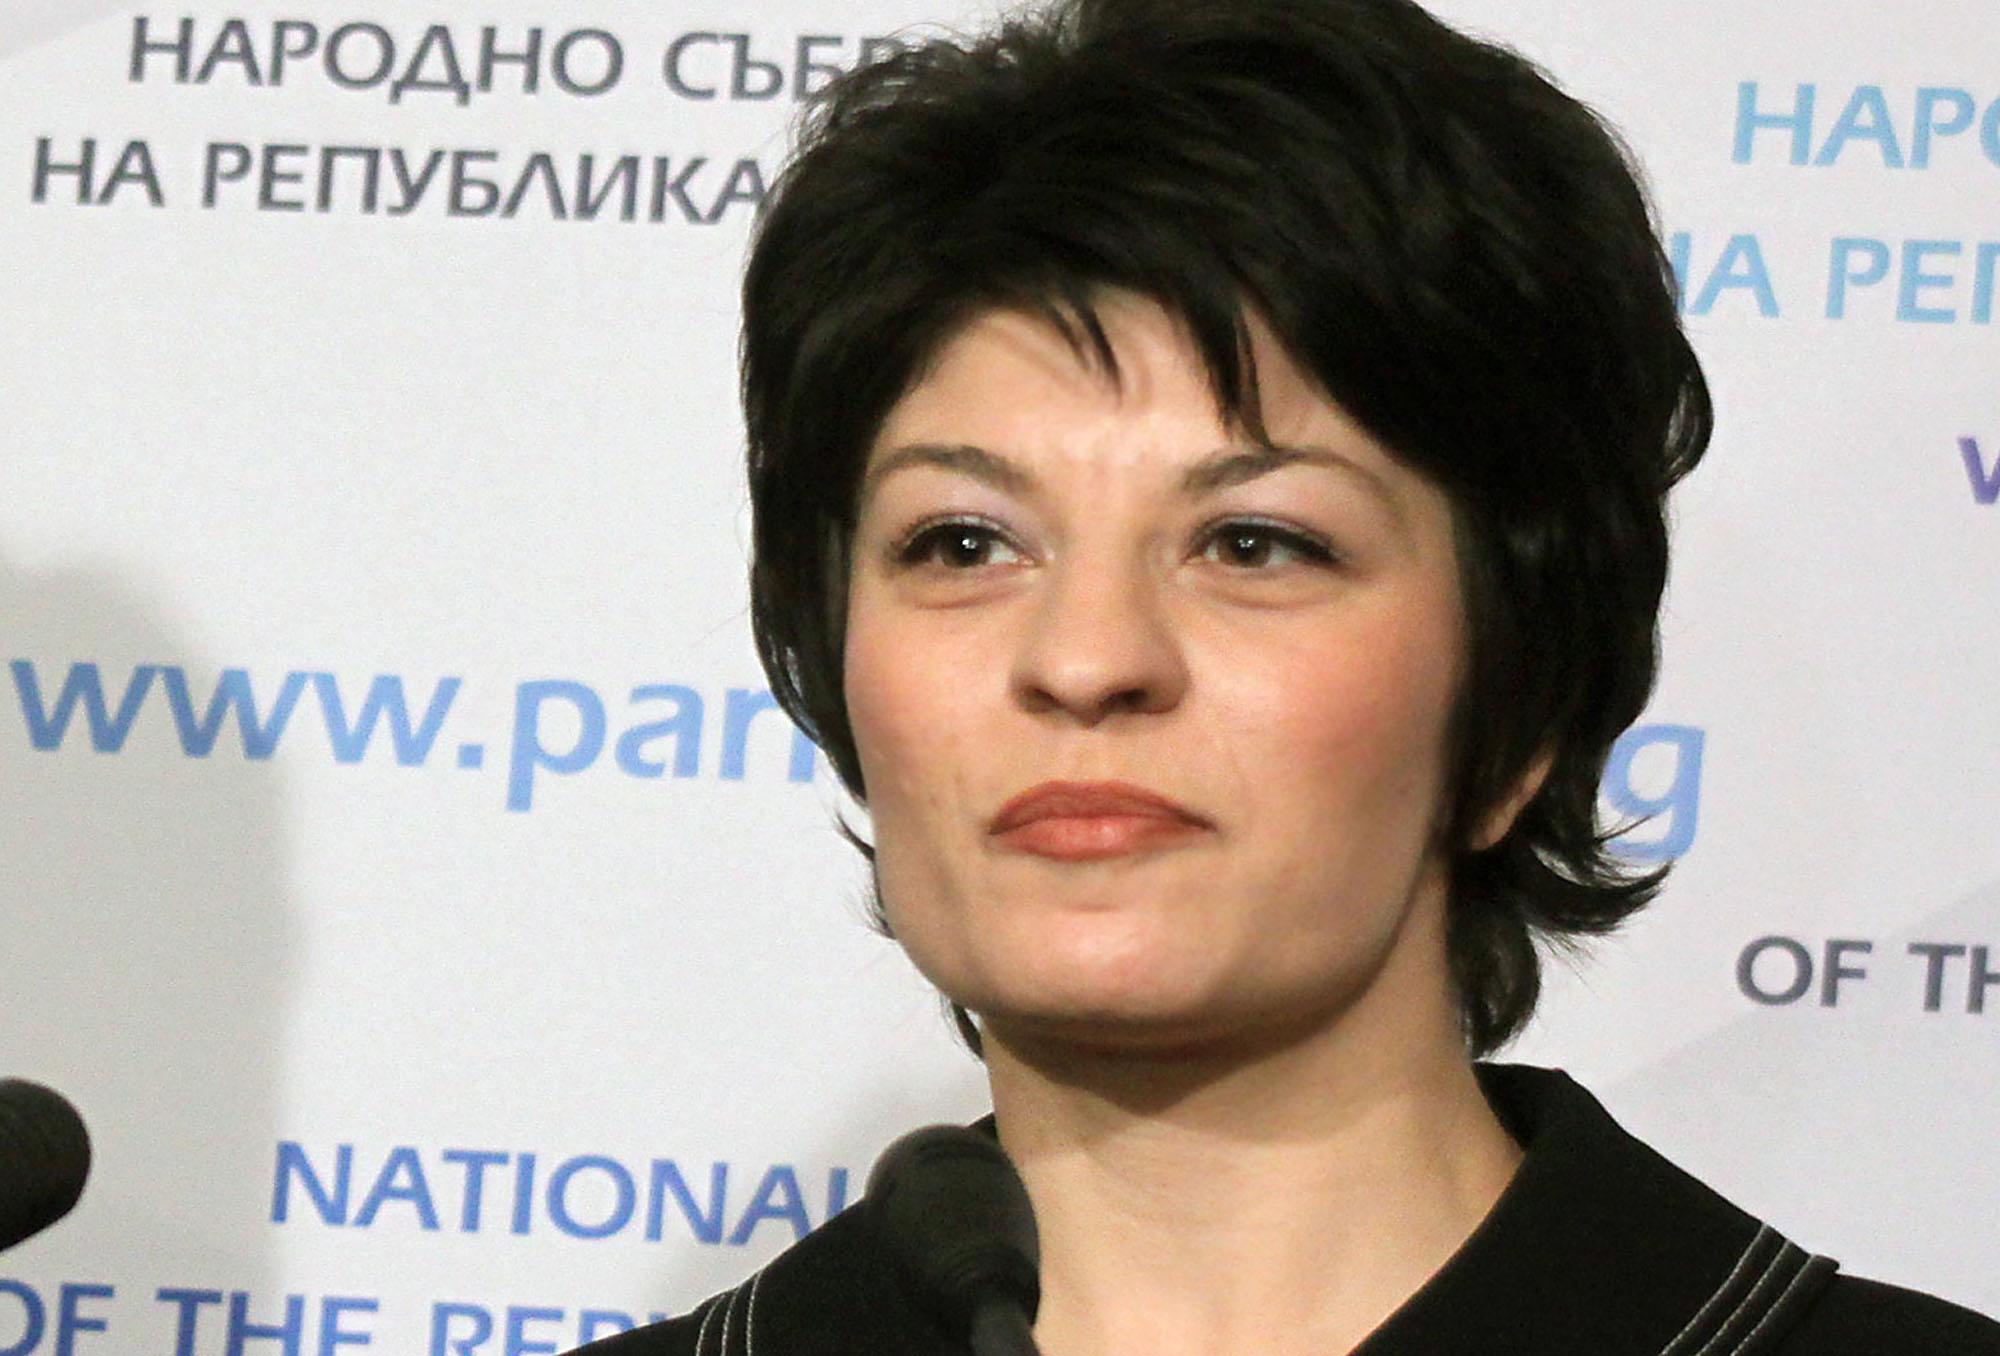 Десислава Атанасова: Премиерът ми заръча да спра цигарите